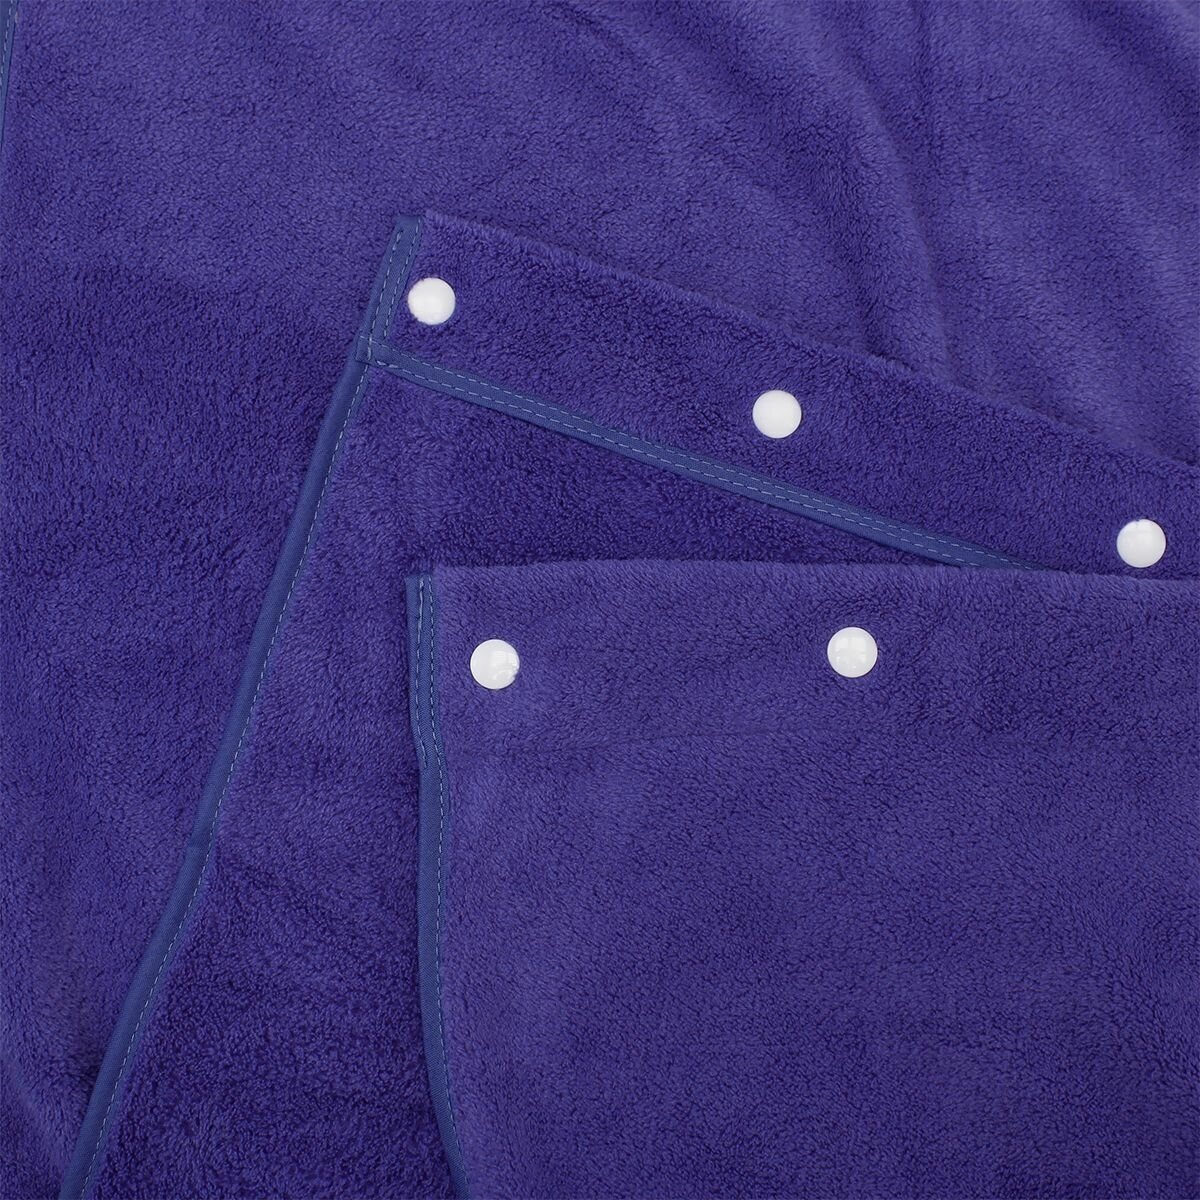 Килт мужское махровое полотенце 80*150 см синий, быстросохнущее мягкое полотенце для спорта, Йога, Баня, подарок - фотография № 3